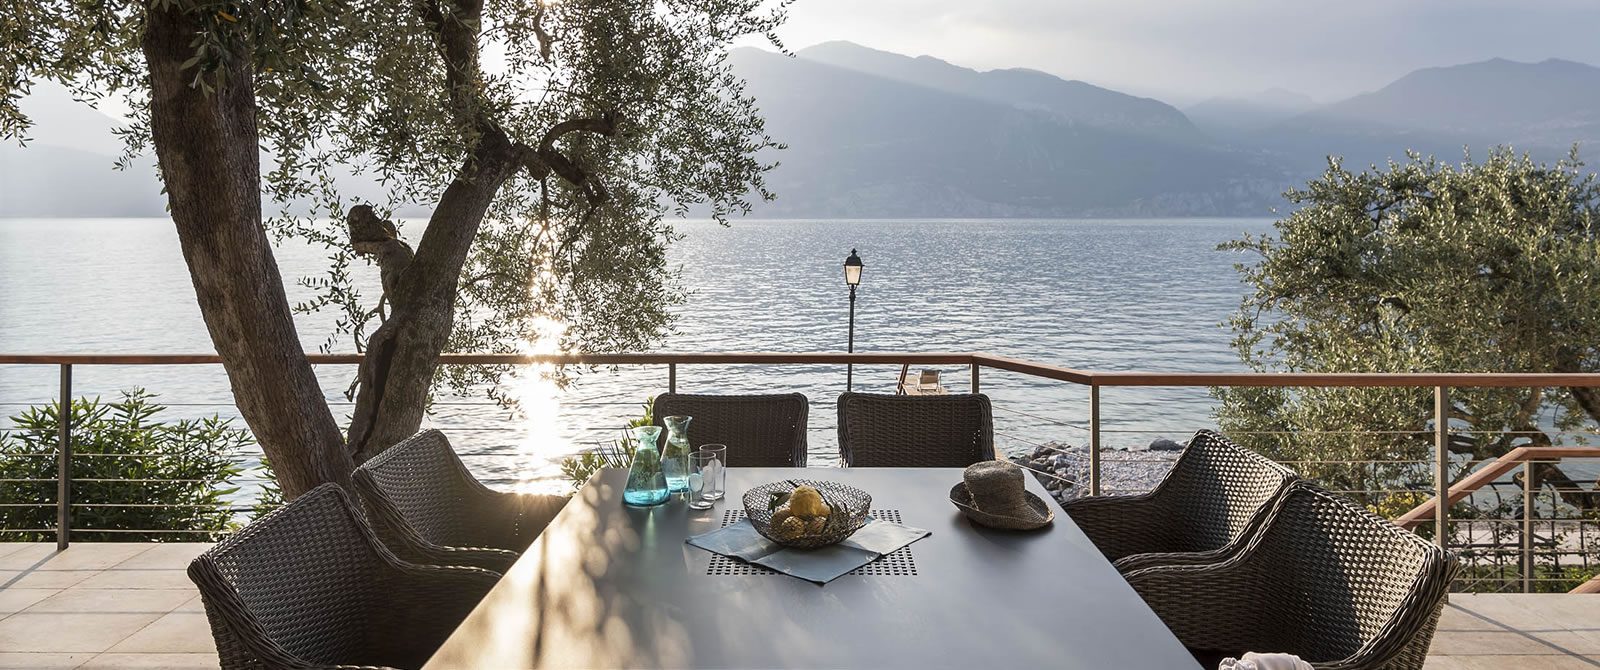 Villa am Gardasee - Luxuriöse Ausstattung